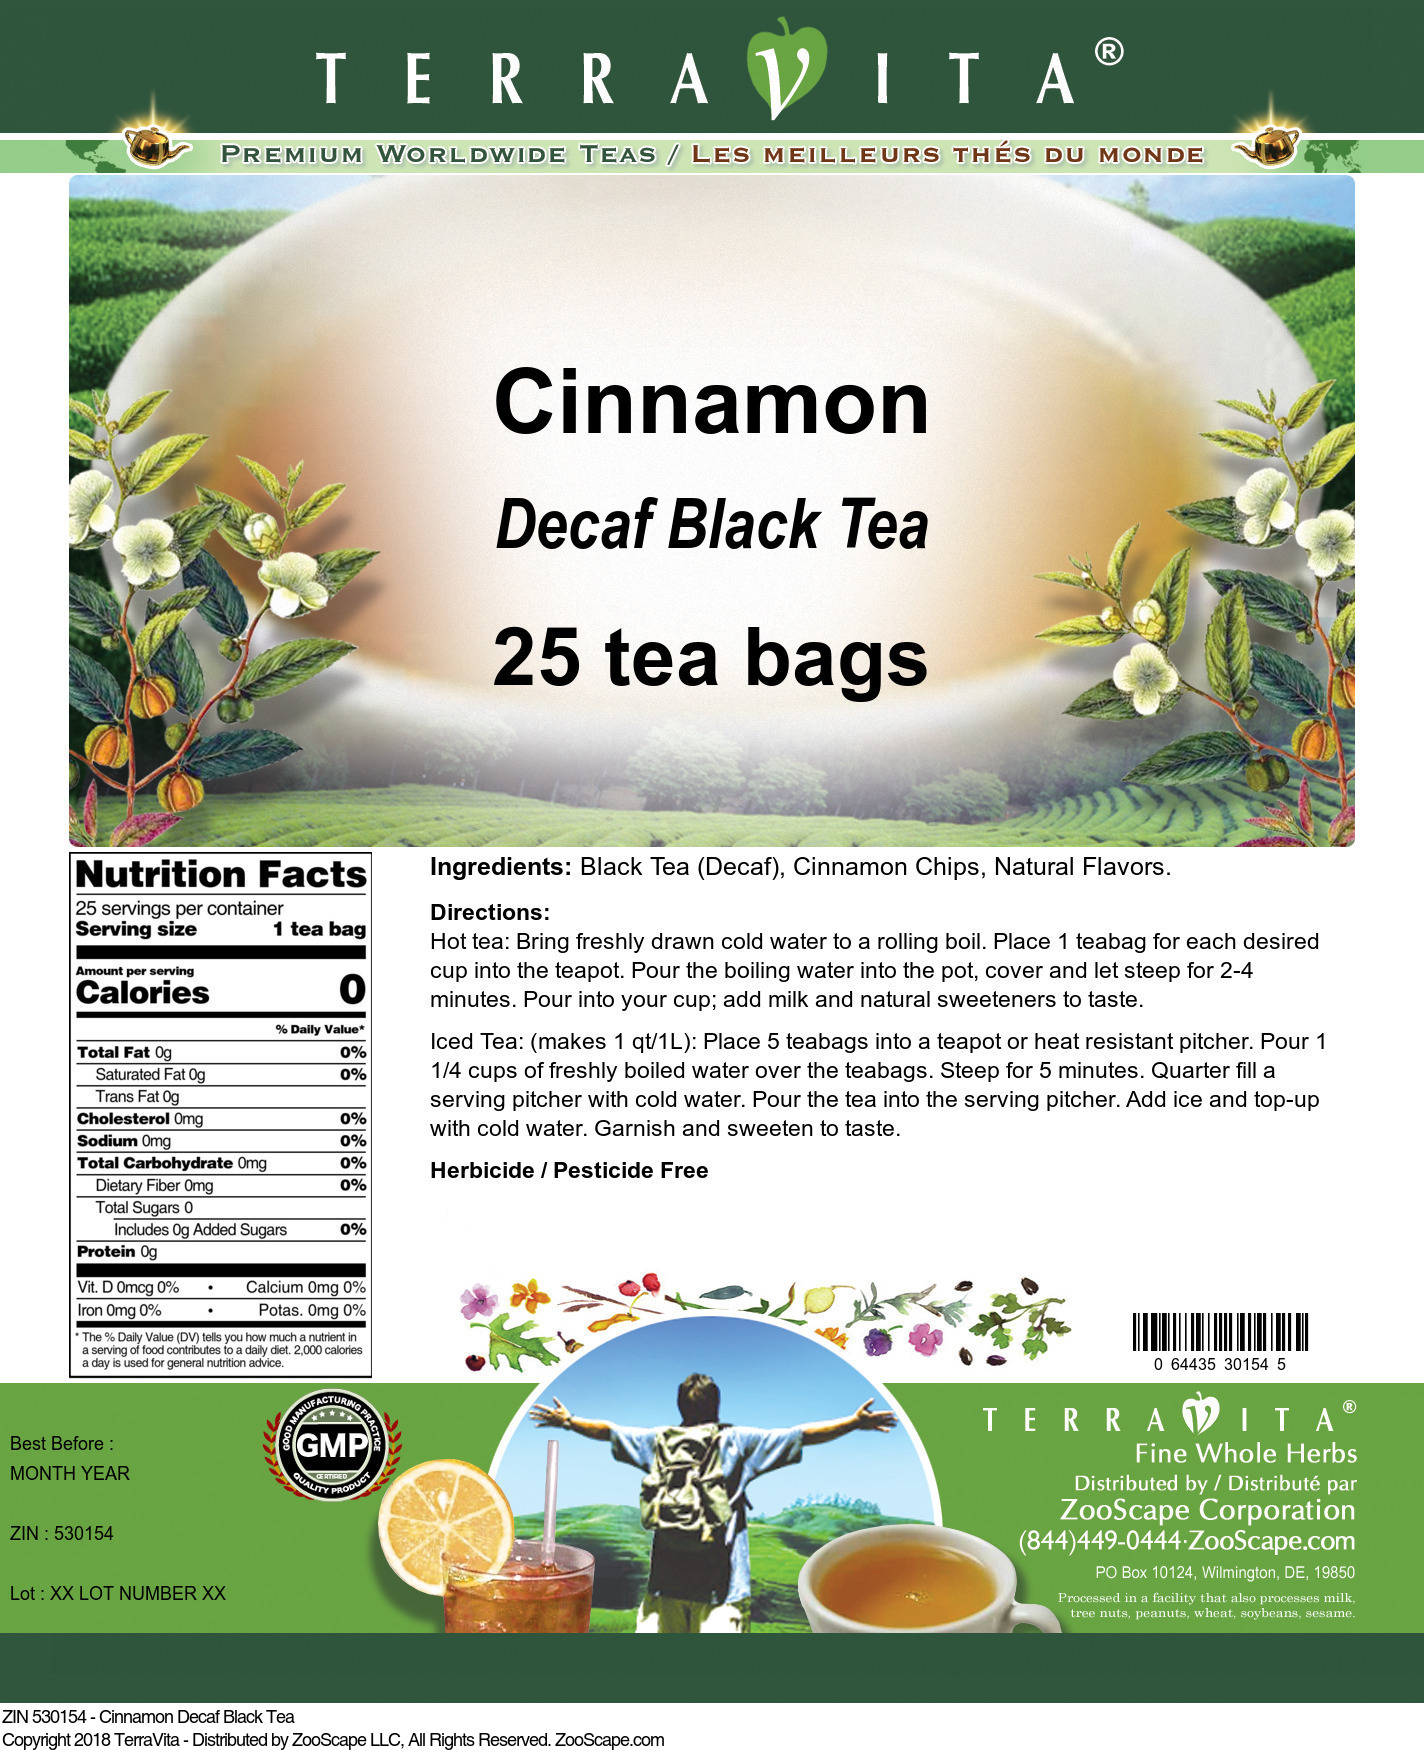 Cinnamon Decaf Black Tea - Label